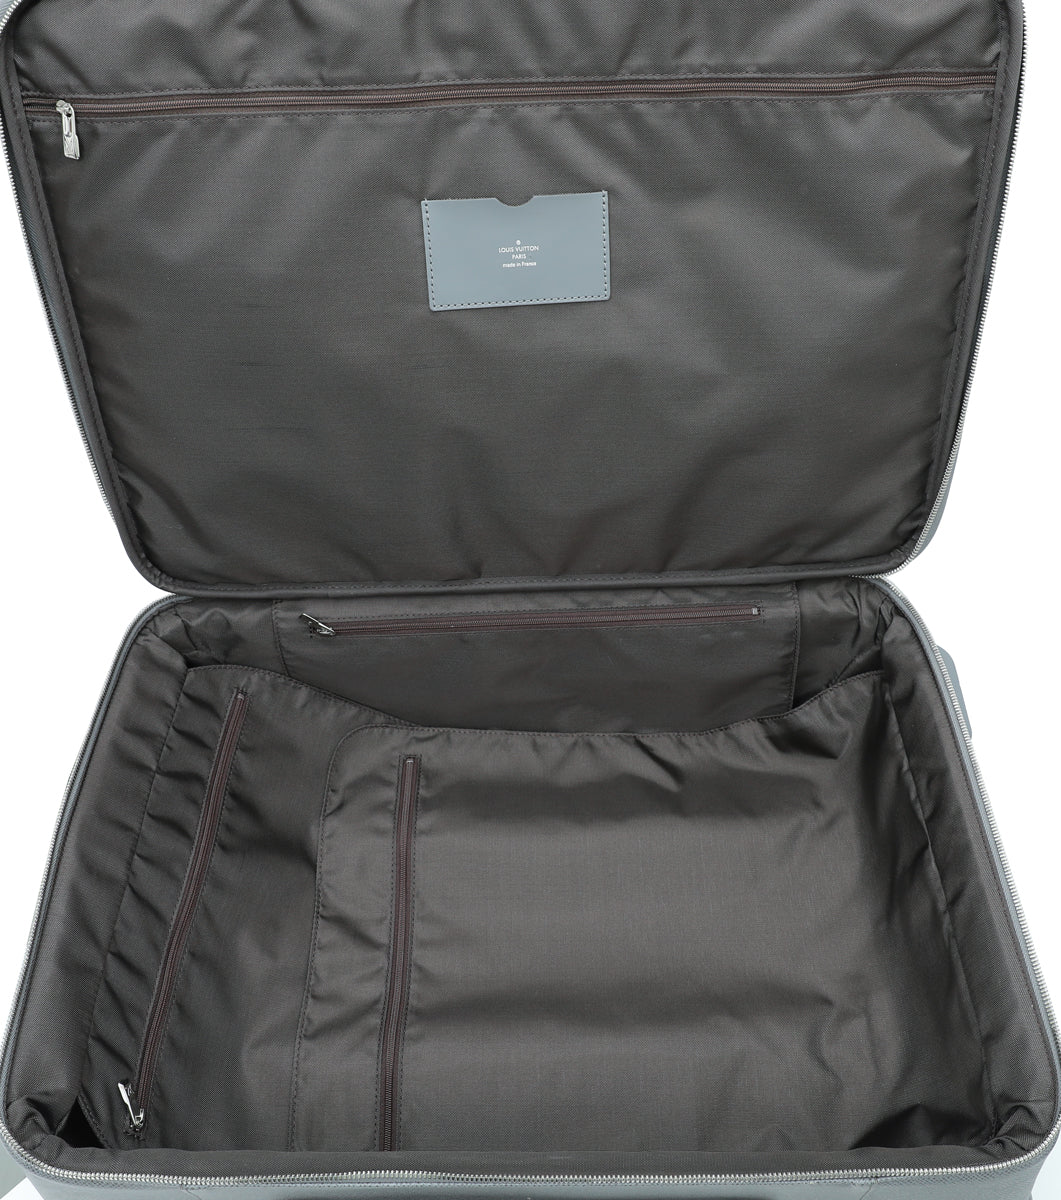 Louis Vuitton Ebene Pegase 55 Bag – The Closet